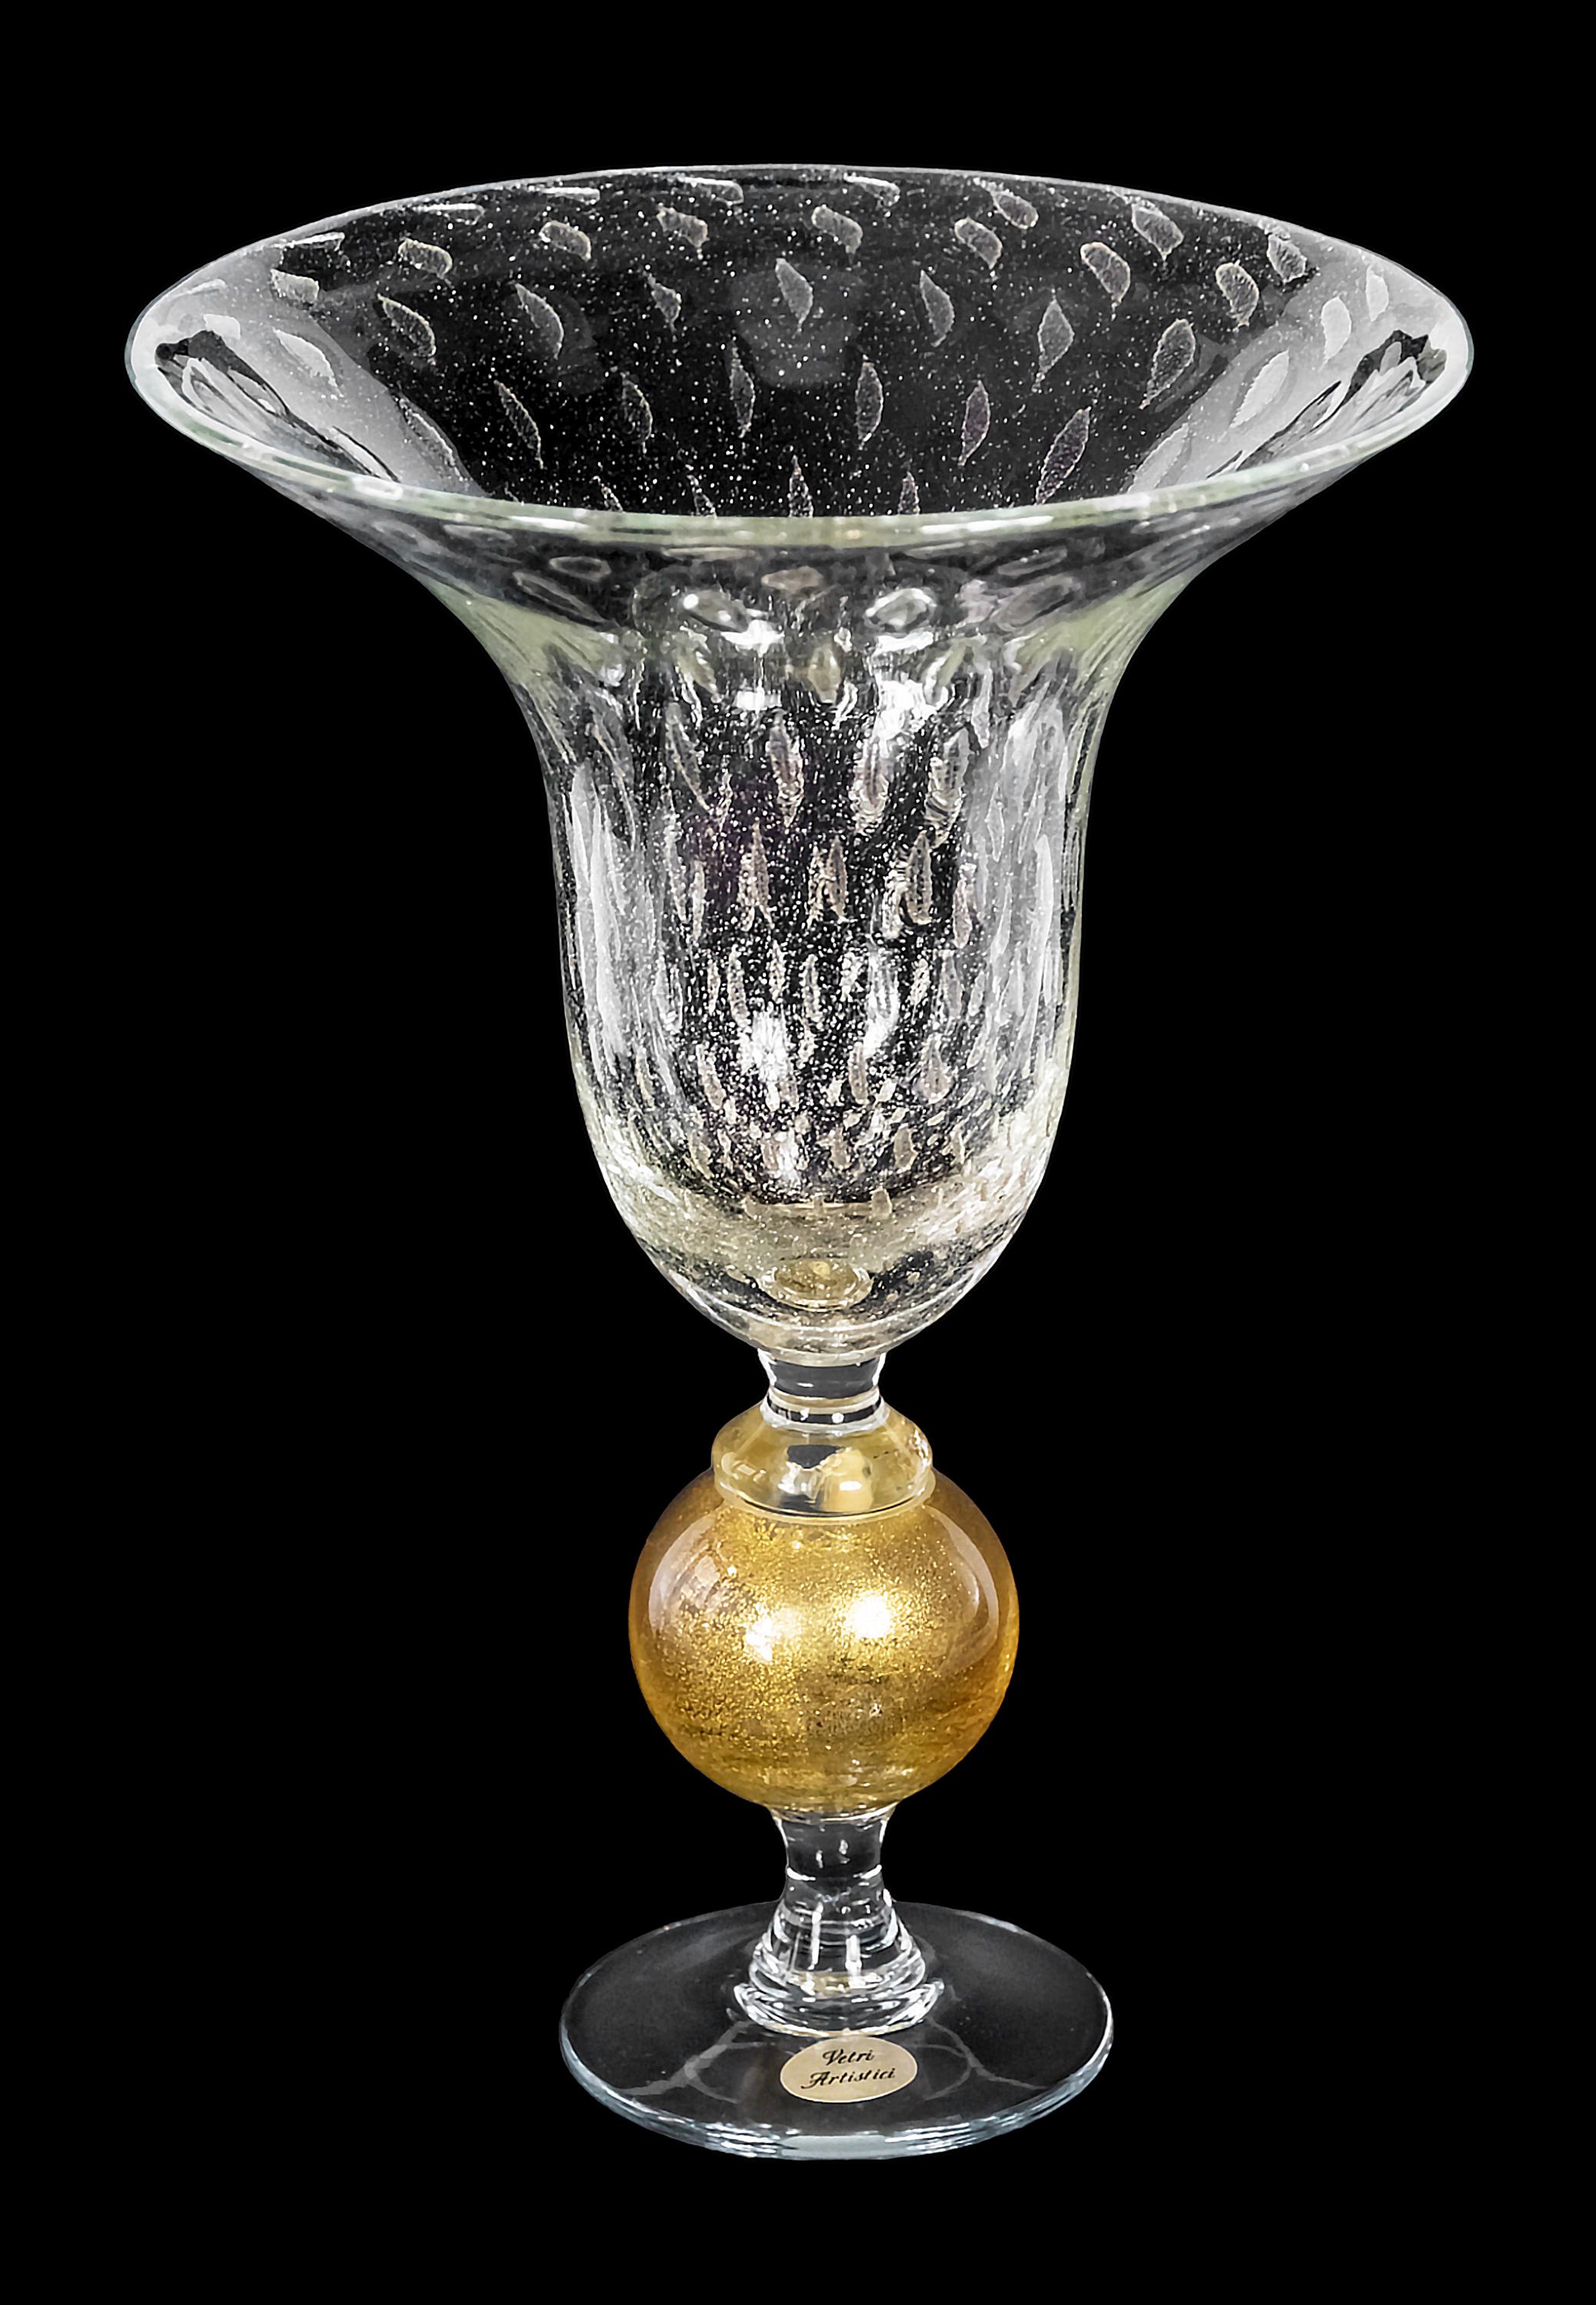 Vase aus italienischem Murano-Glas, handgefertigt vom Glasmeister Marino Santi und mit einer Gravur auf dem Sockel signiert. 
Murano-Glas mit Luftblasen im Inneren und eingelegtem Goldstaub. 
Der Sockel ist aus klarem Glas mit einem kugelförmigen